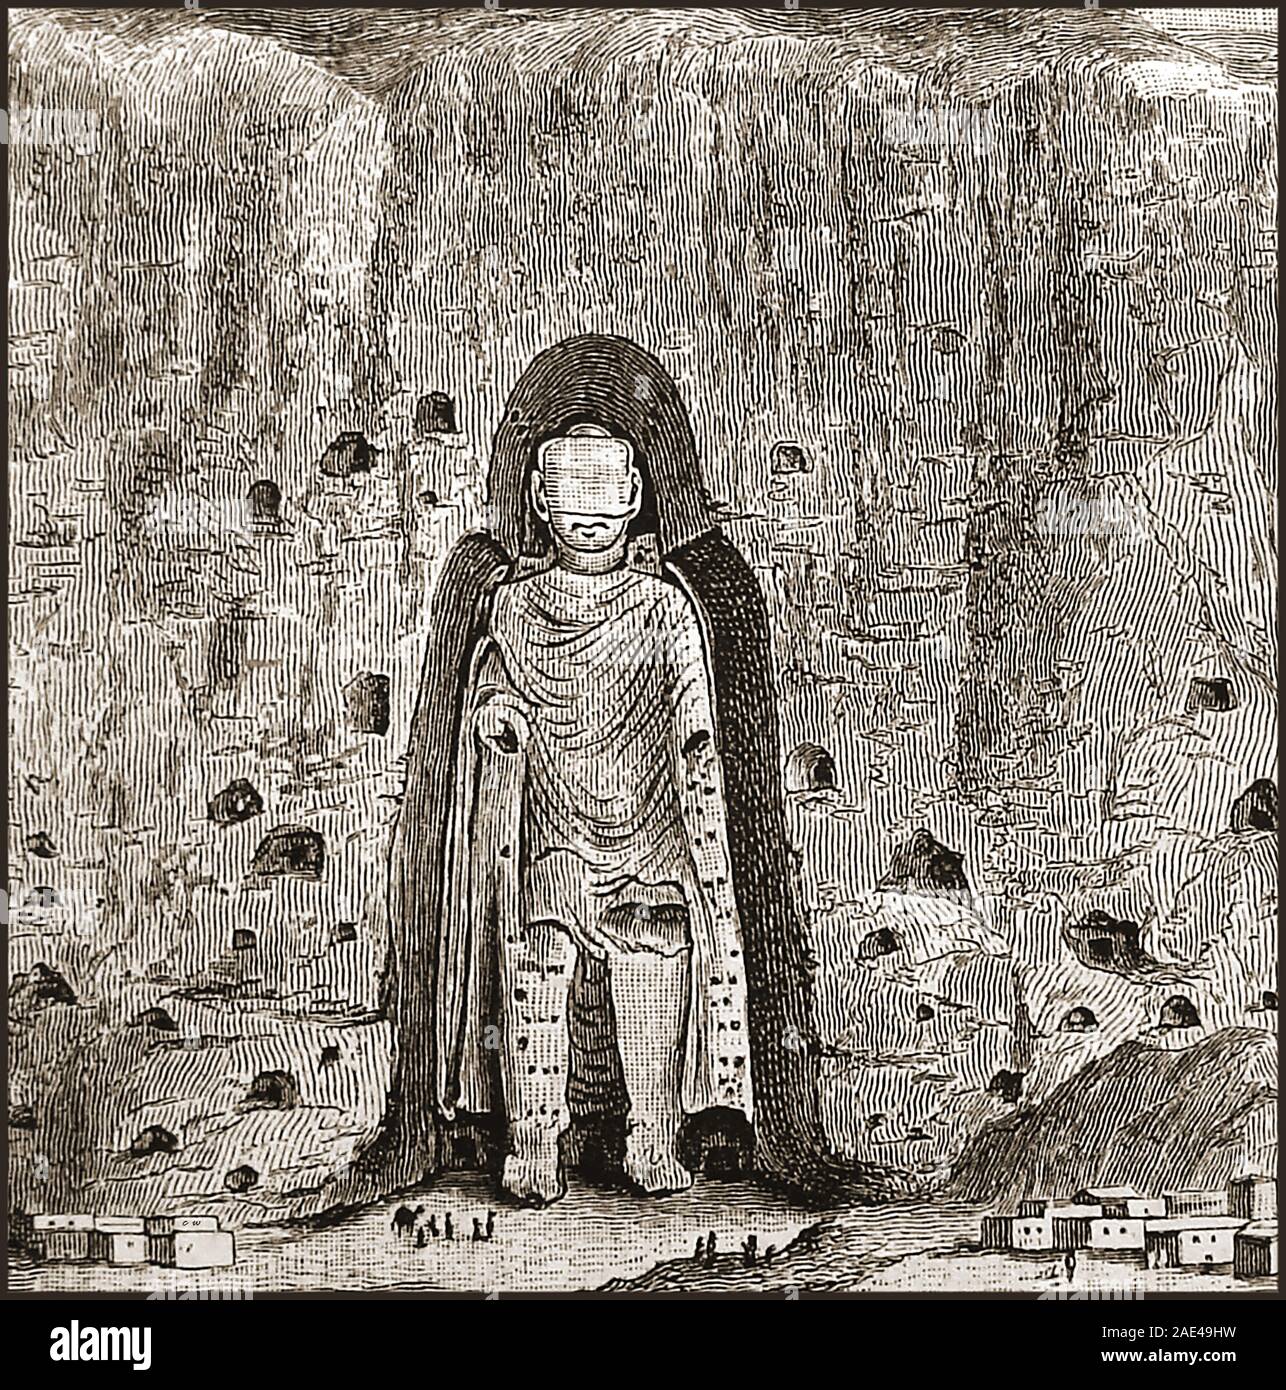 Eine historische 1888 Bild der das ehemals größte Riese Standing Rock Abbildung des Buddha in Bamian/Bamiyan/Bamiyan, Afghanistan. Dies und die kleinere Statue wurden gesprengt, und im März 2001 von den Taliban zerstört, weil (angeblich) sie als Götzen erklärt wurden. Das Gesicht auf dem Bild nur leer, weil die feinen Gesichtszüge in Ton modelliert waren längst verschlechtert. Die Vertiefungen in den Felsen sind Höhlen, in denen die Einsiedler lebte. Stockfoto